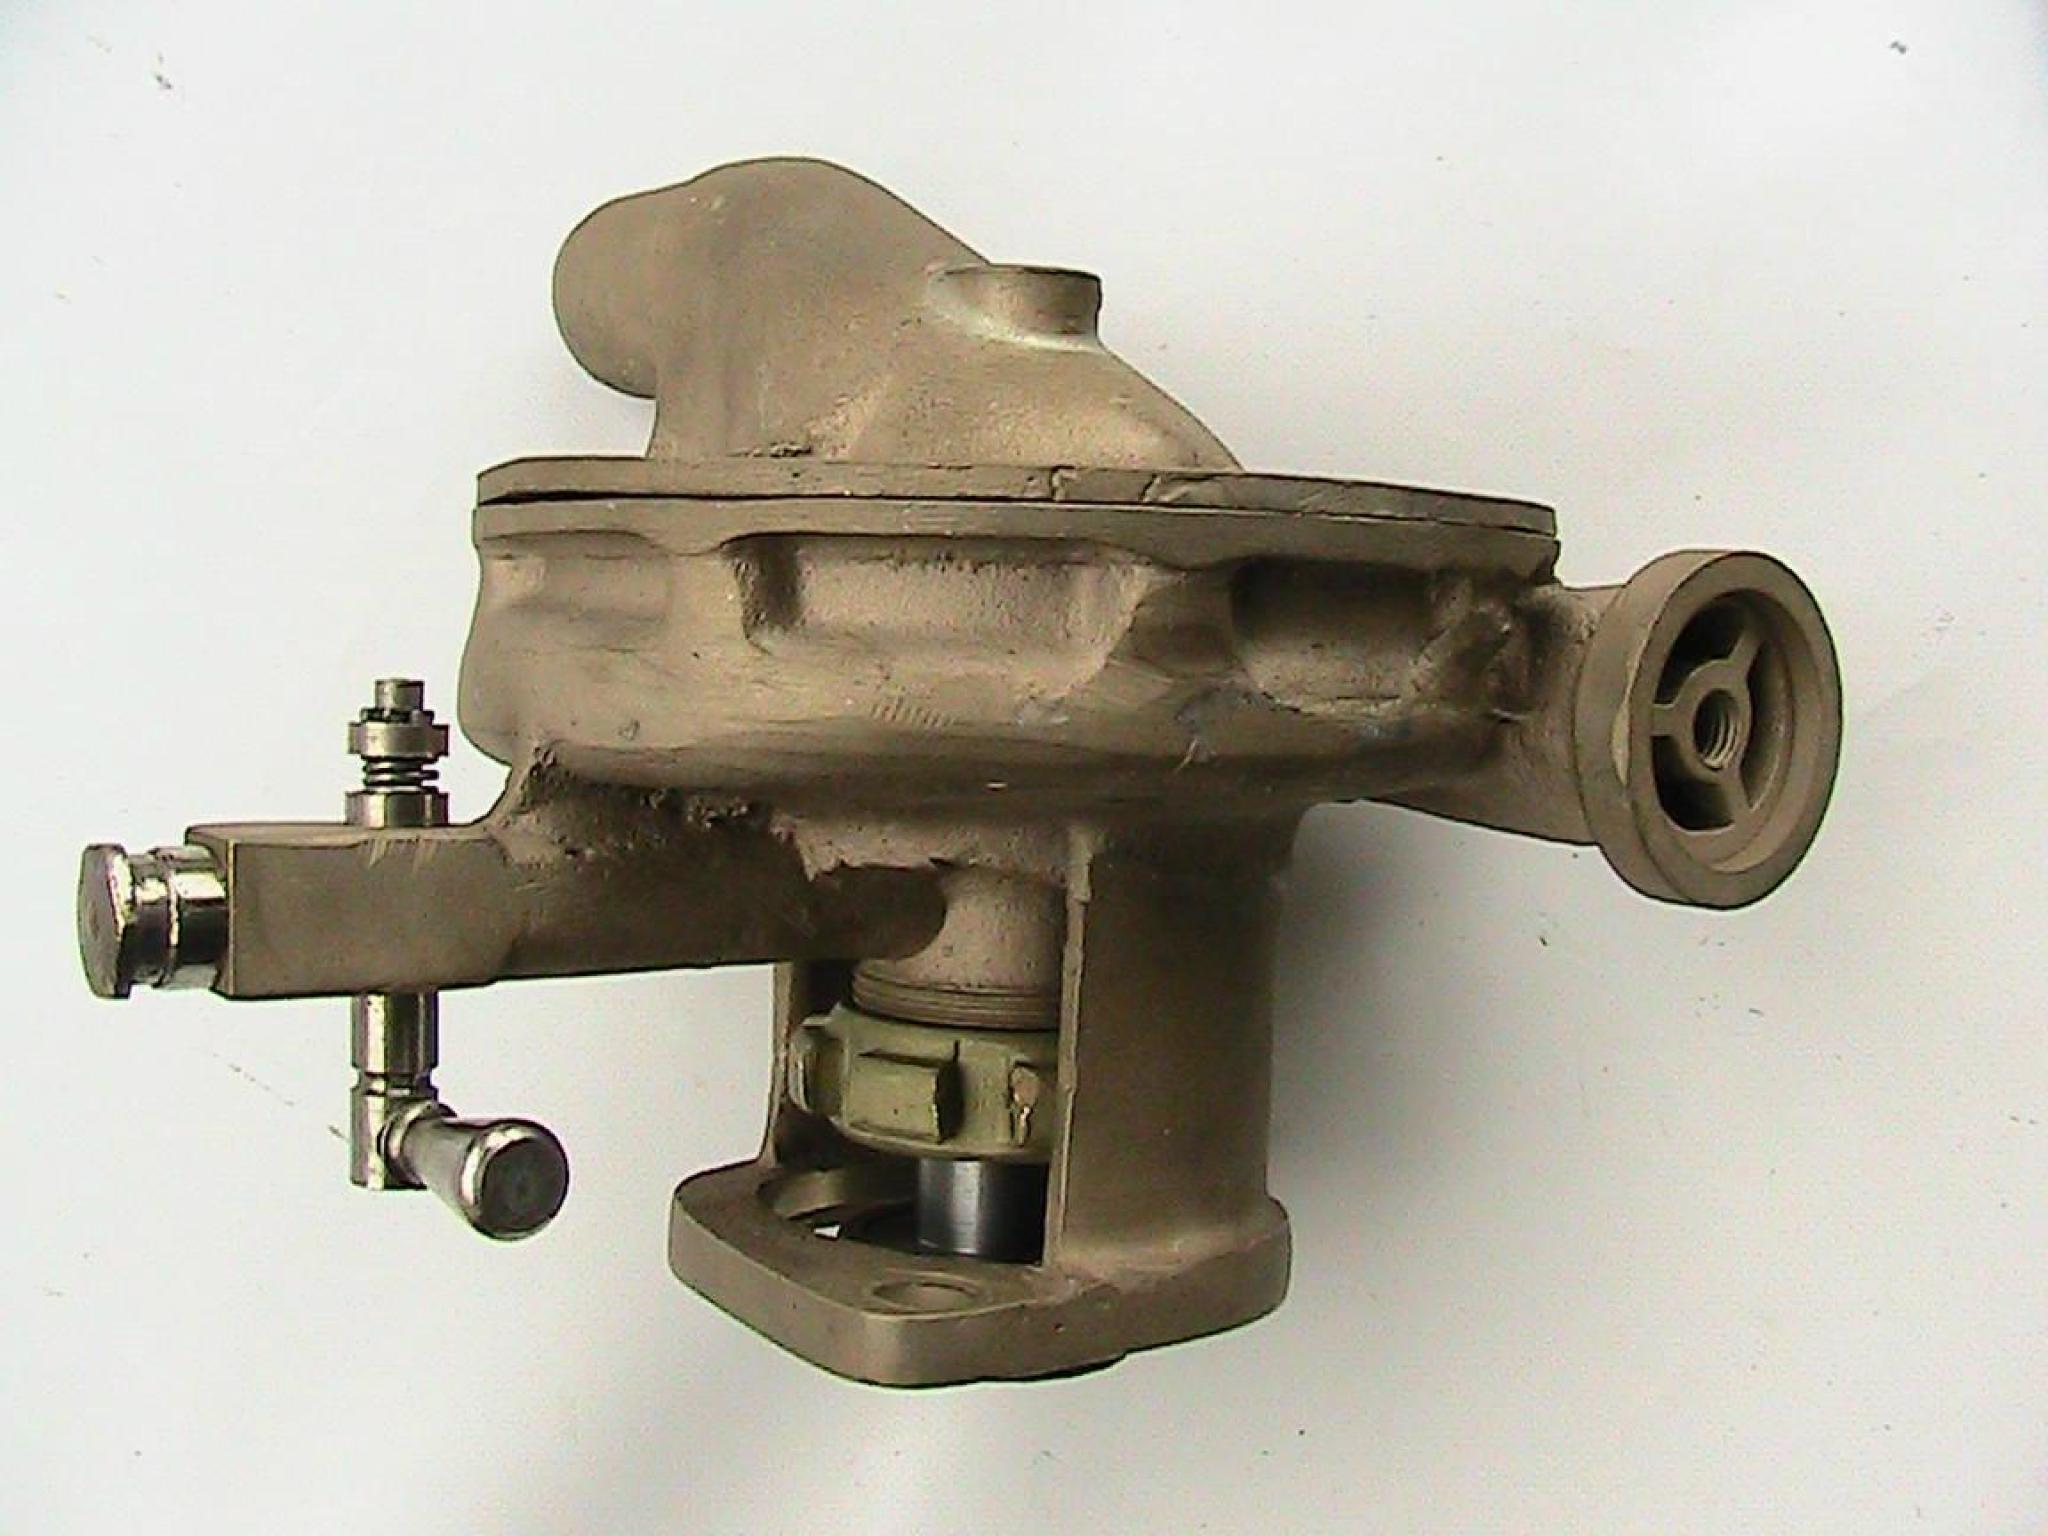 DELAUNAY BELLEVILLE 1914. pompe modifiée avec roulement étanche et garniture mécanique a grain céramique (plus de presse étoupe)